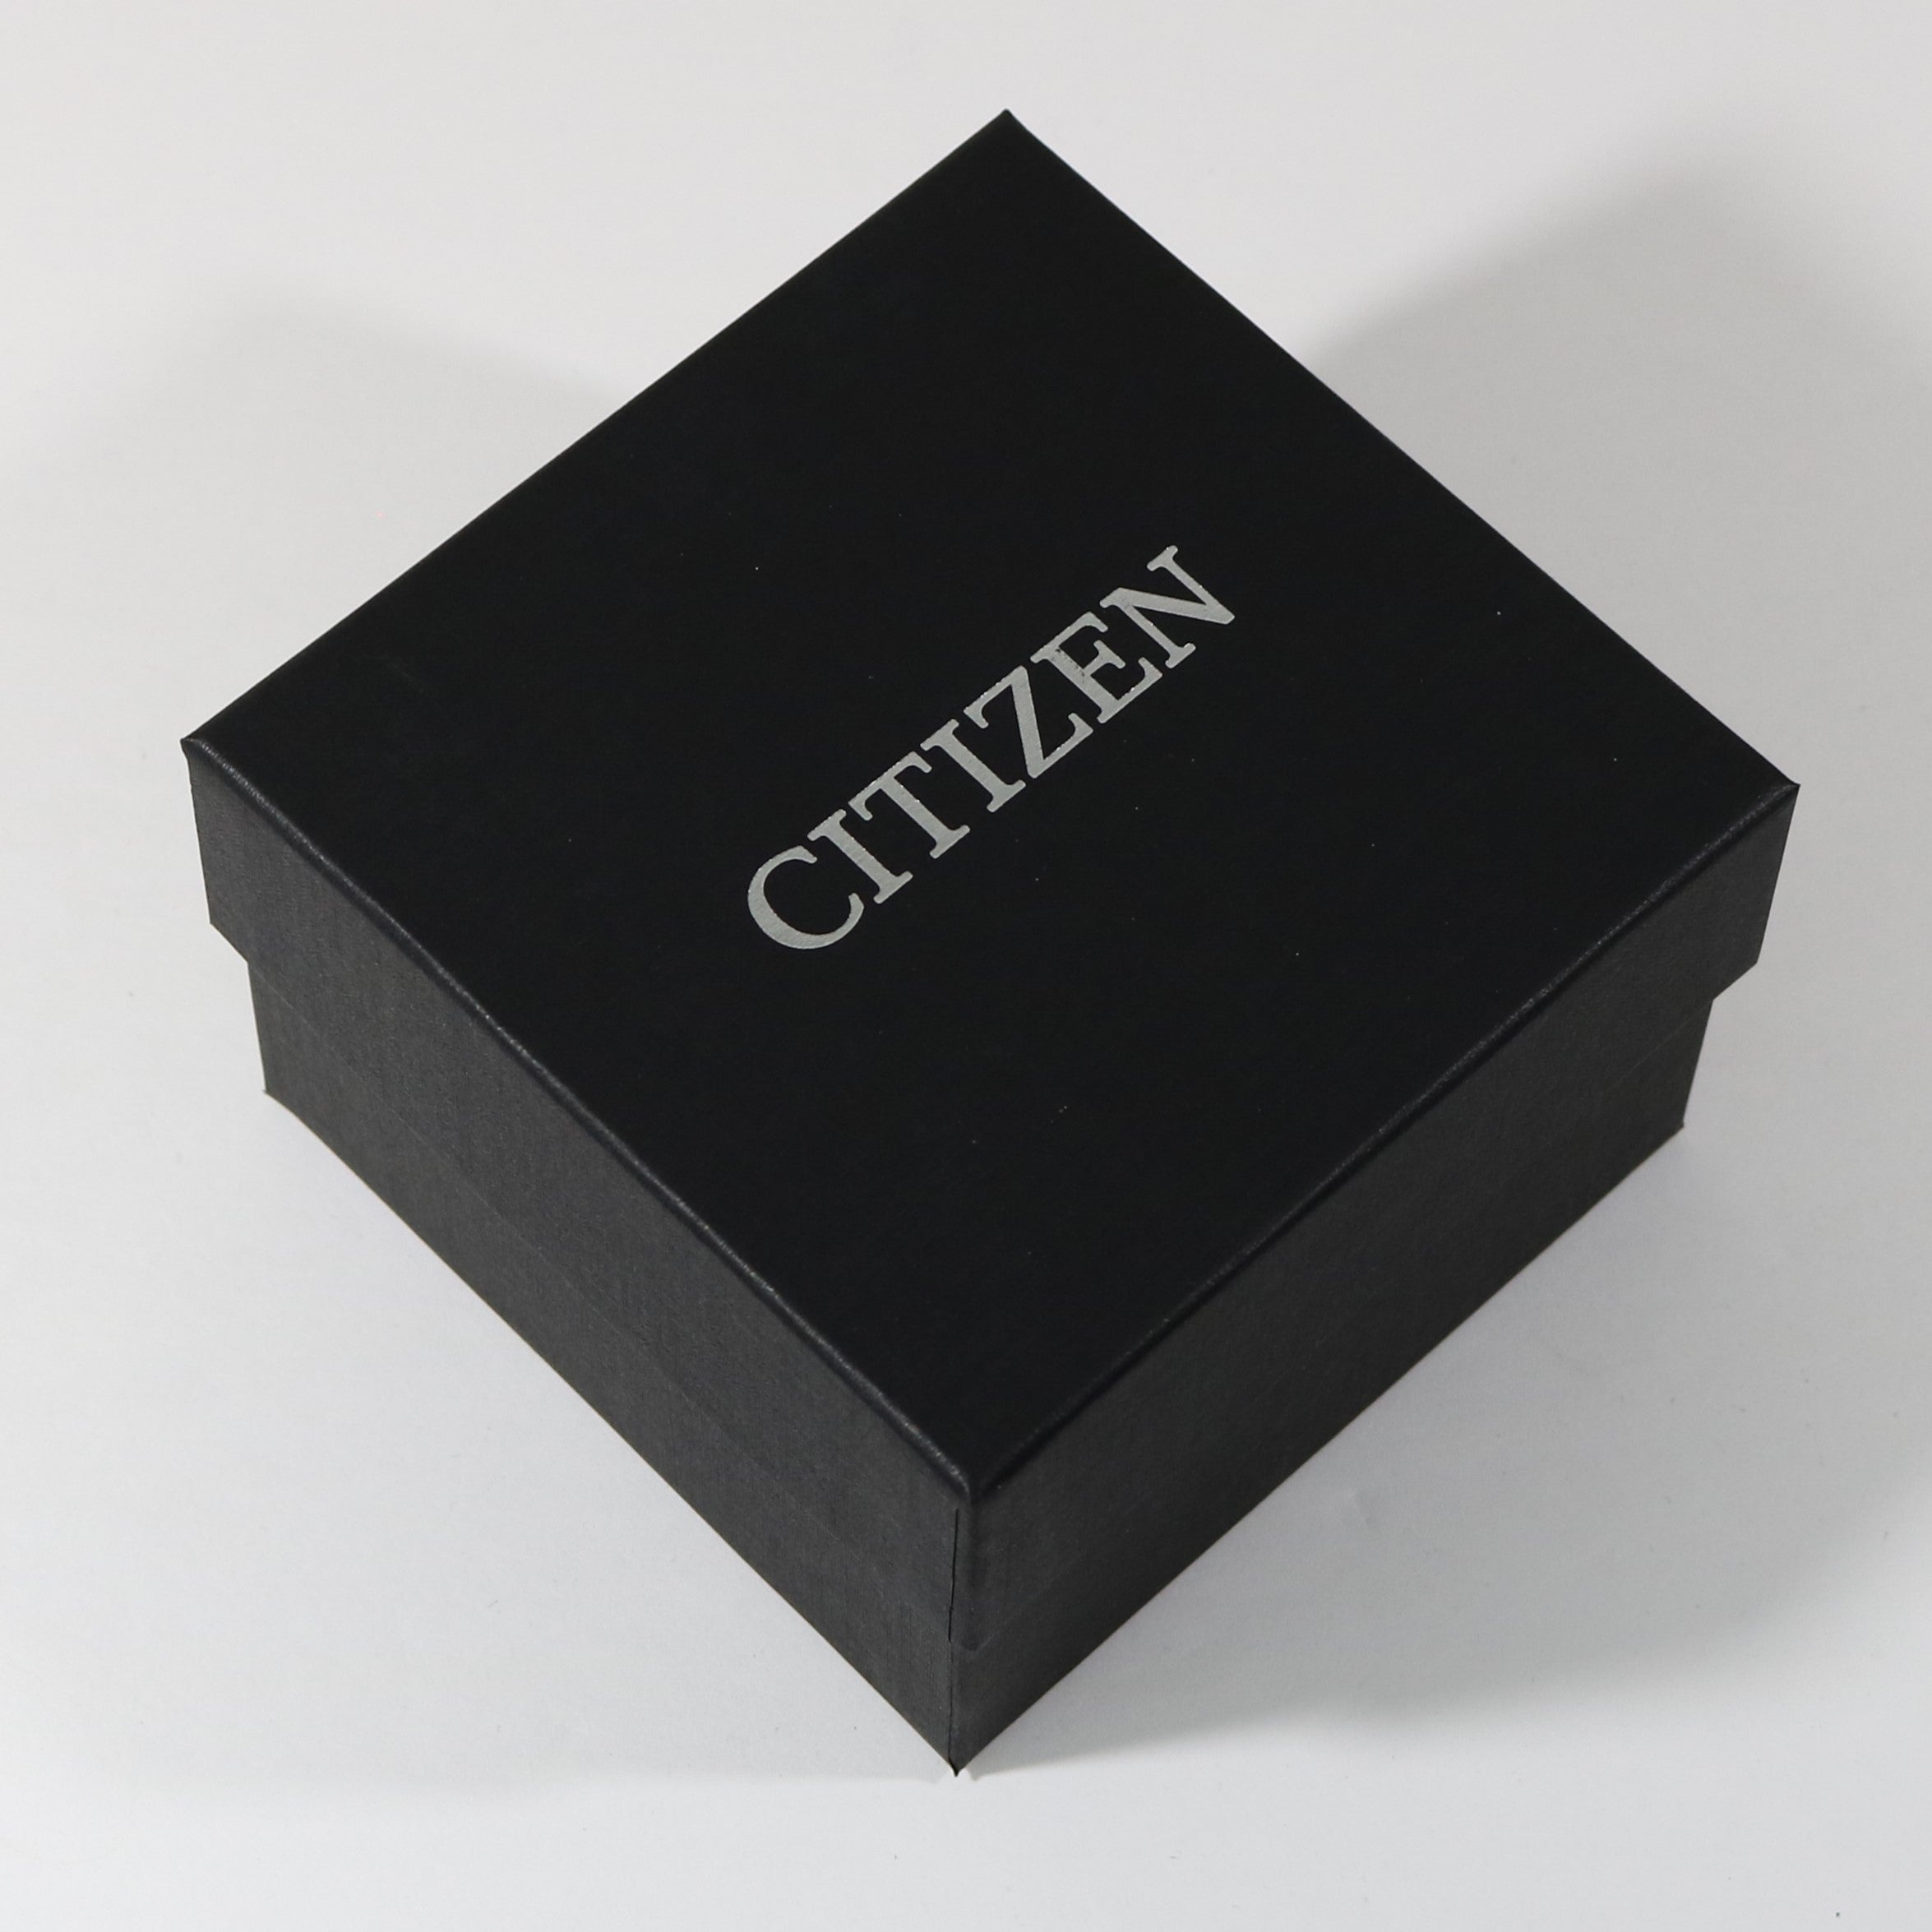 Citizen Quartz Women\'s Dress Blue Dial Stainless Steel Watch EU6090-54 –  Chronobuy